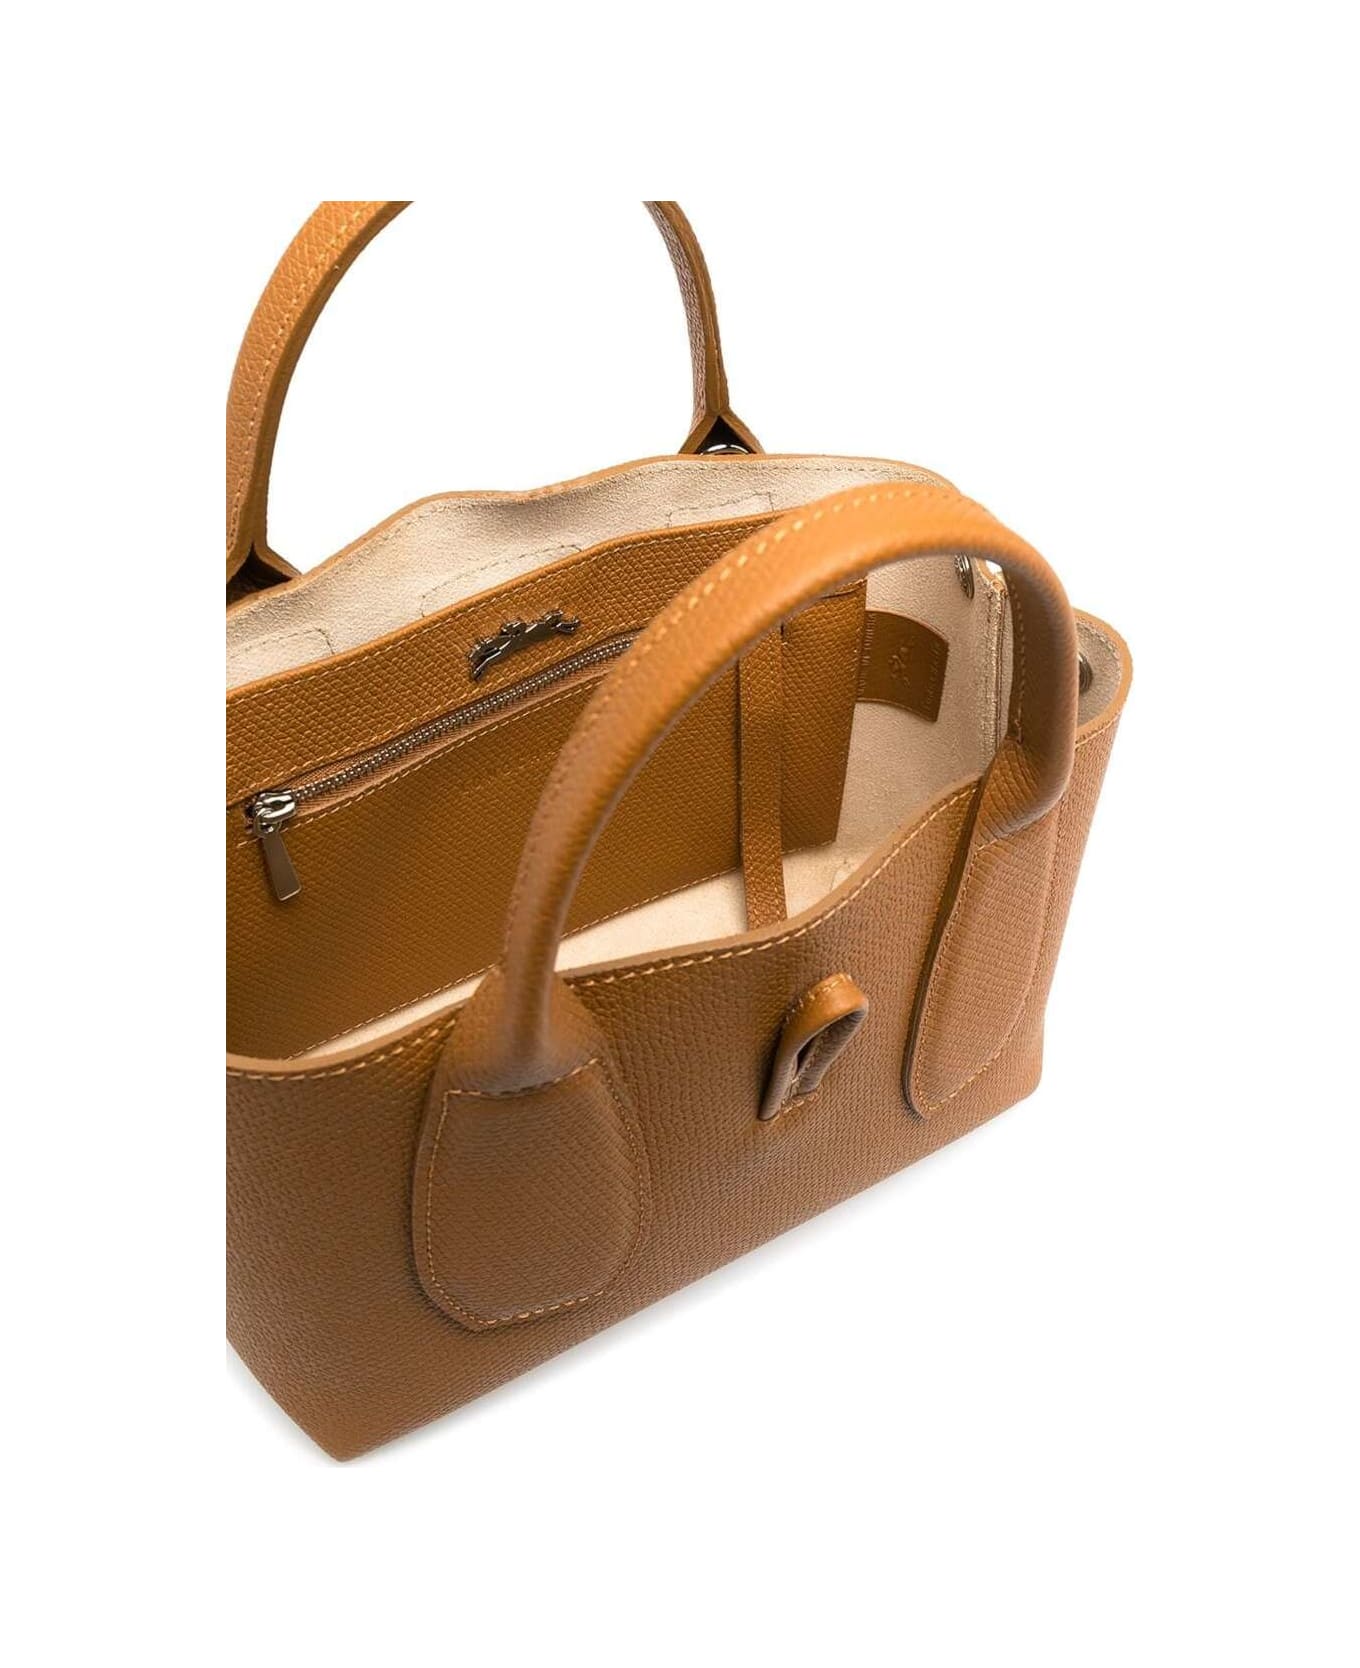 Longchamp Roseau Handbag S - BROWN